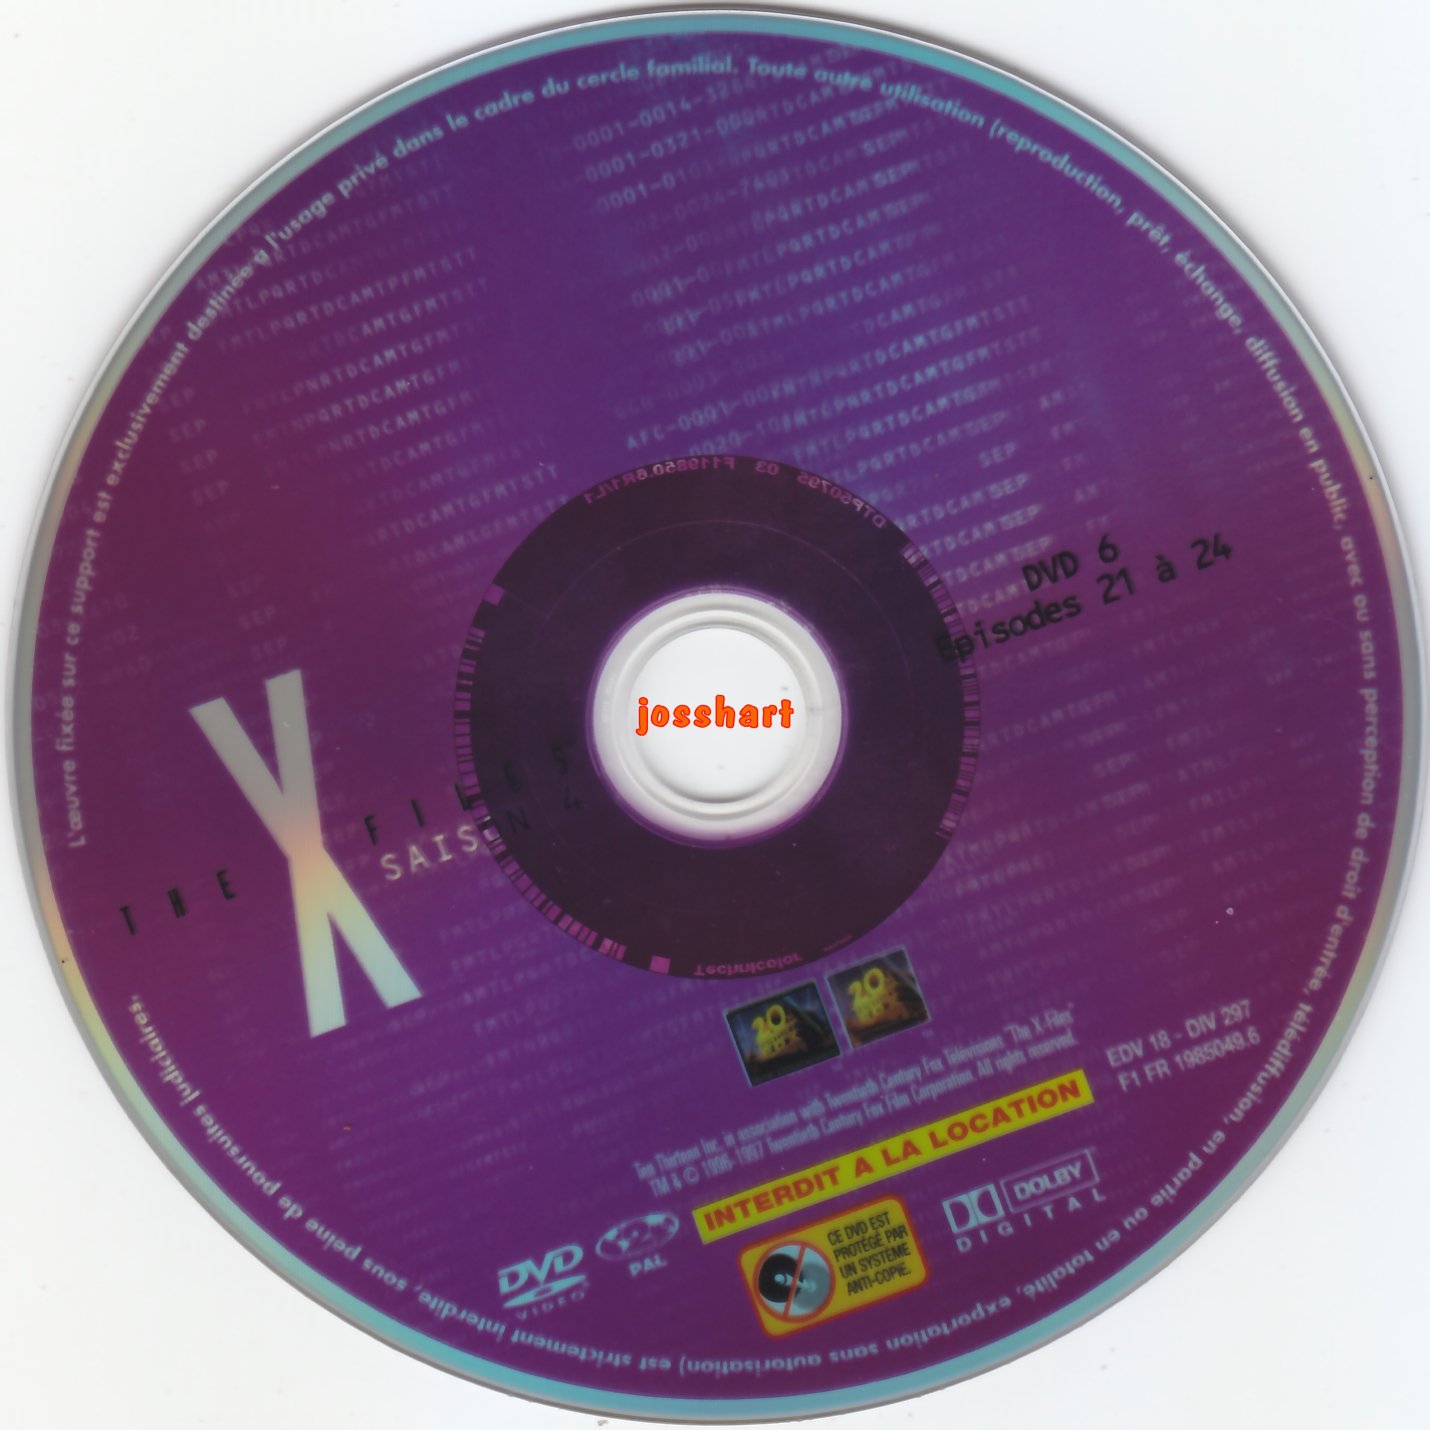 The X Files Saison 4 DVD 6 v2